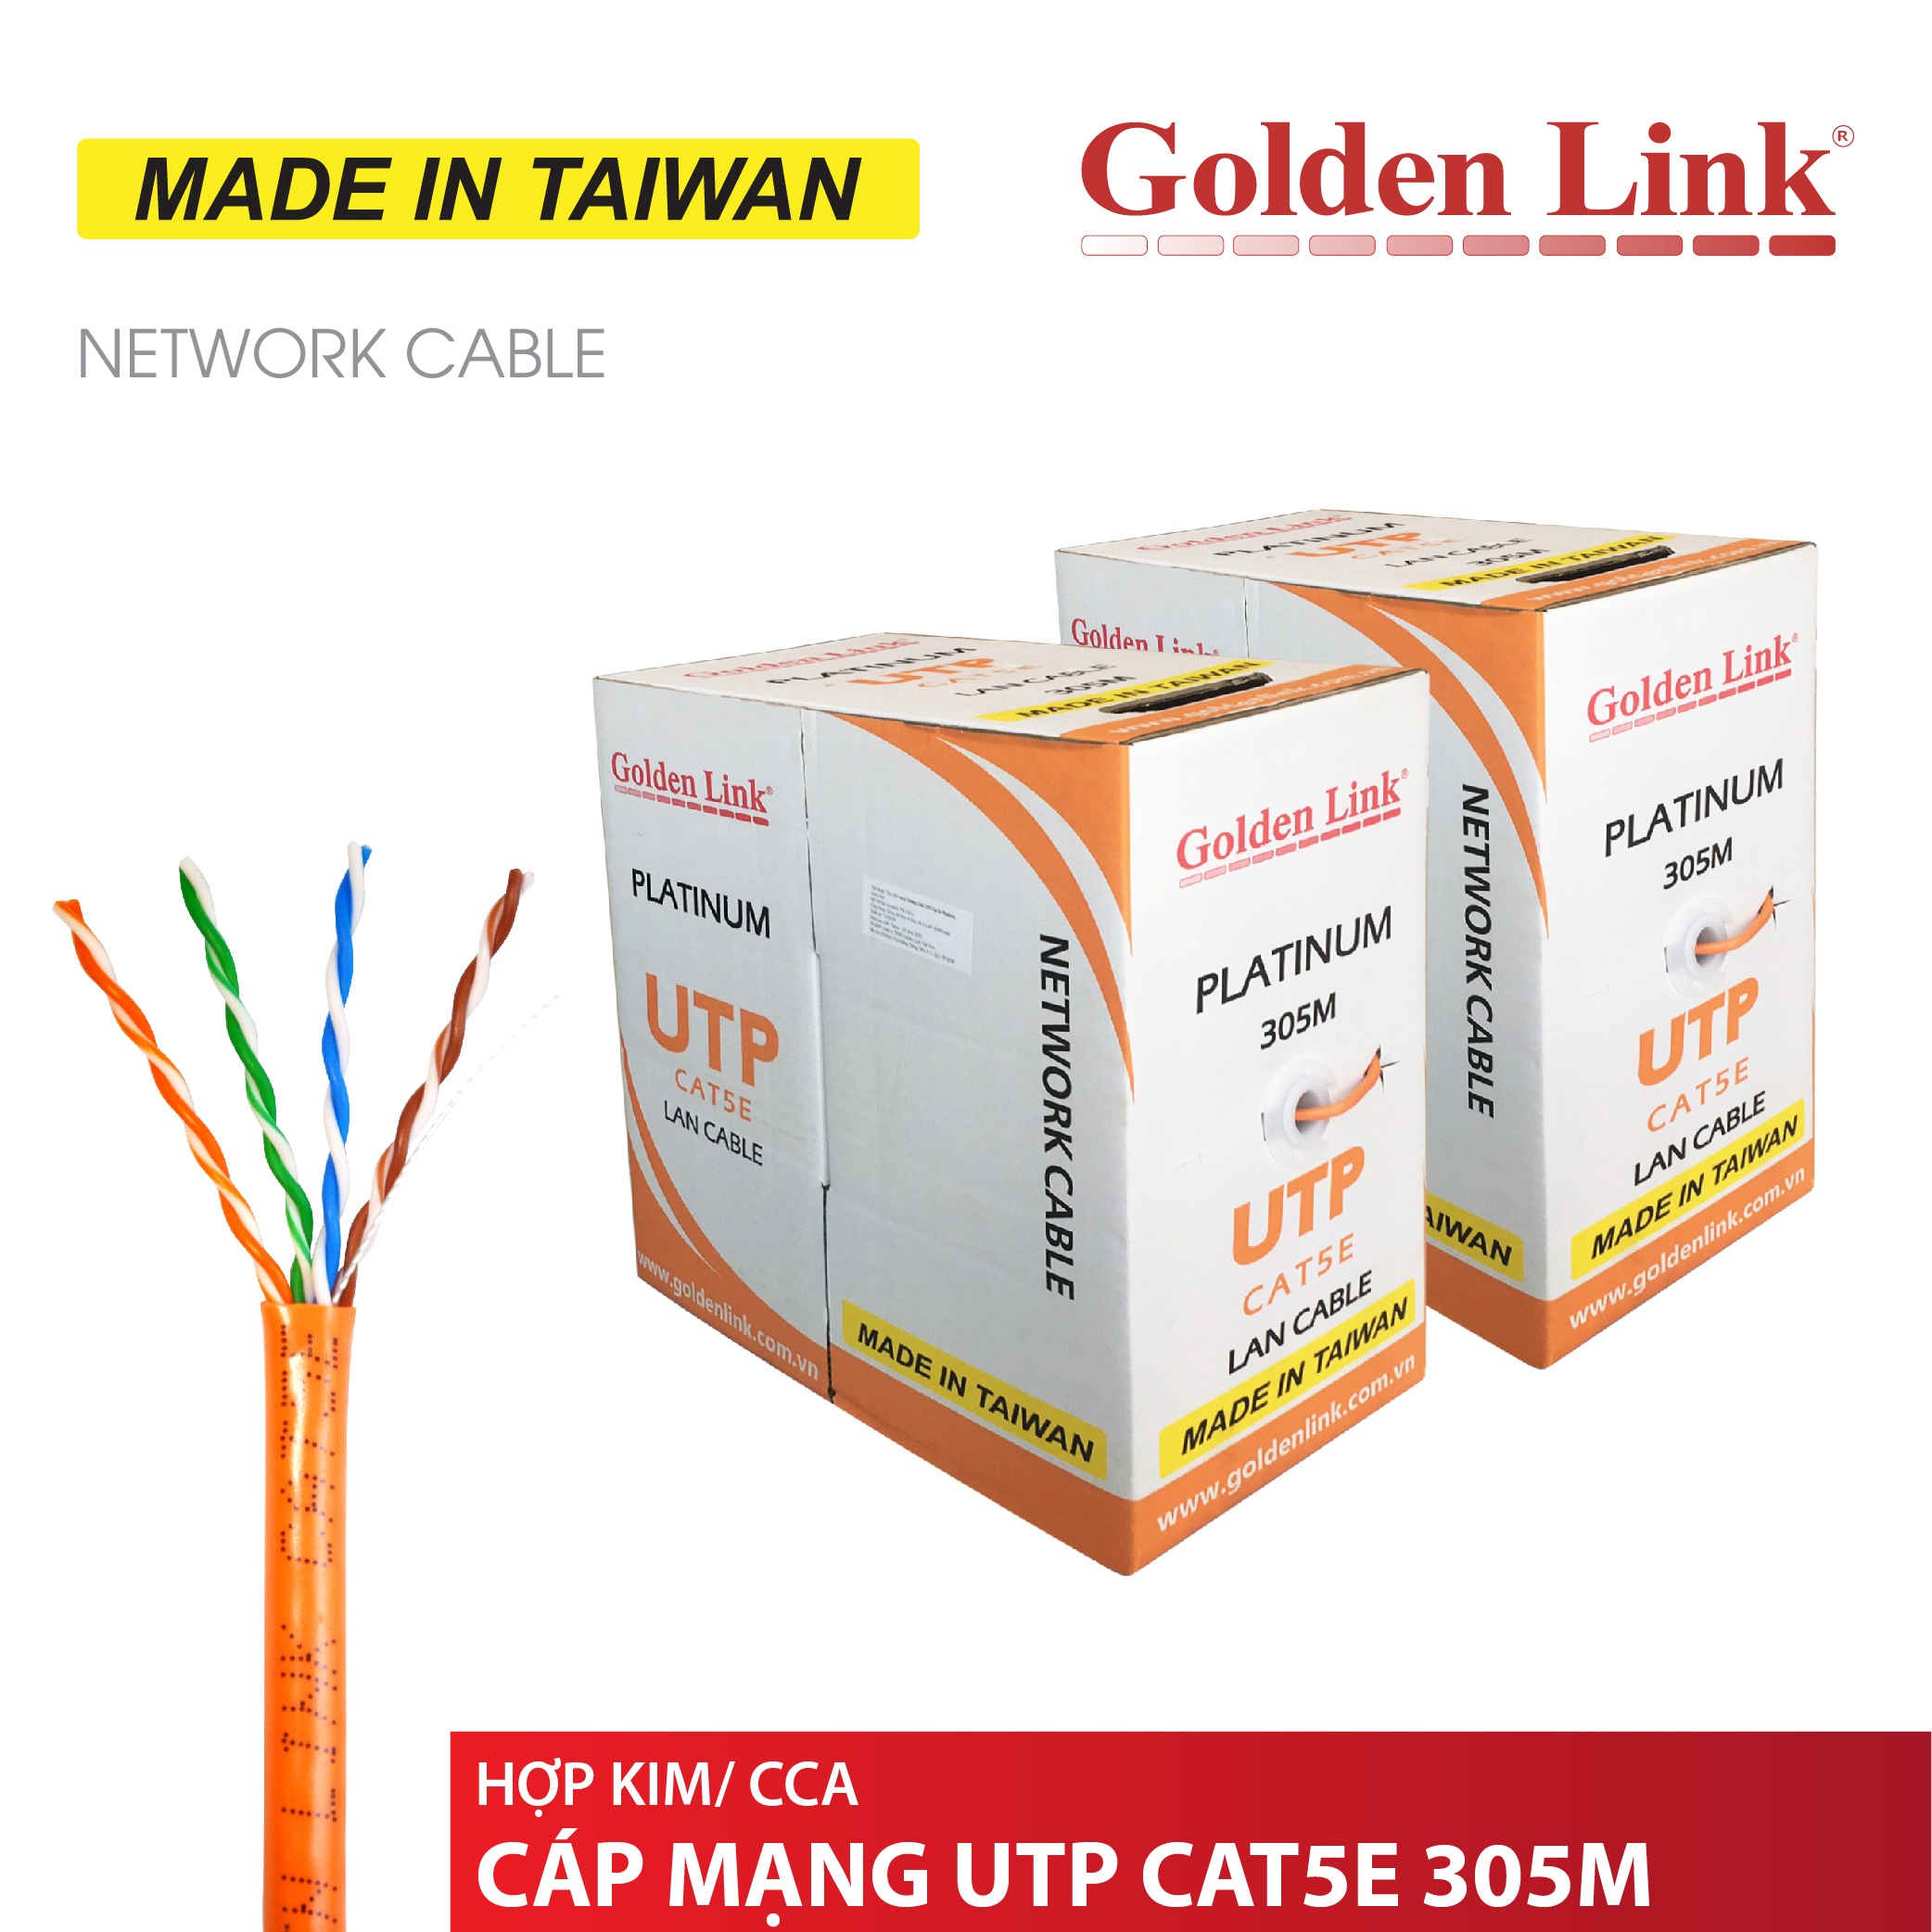 Golden Link Platinum UTP CAT 5E Made in Taiwan orange